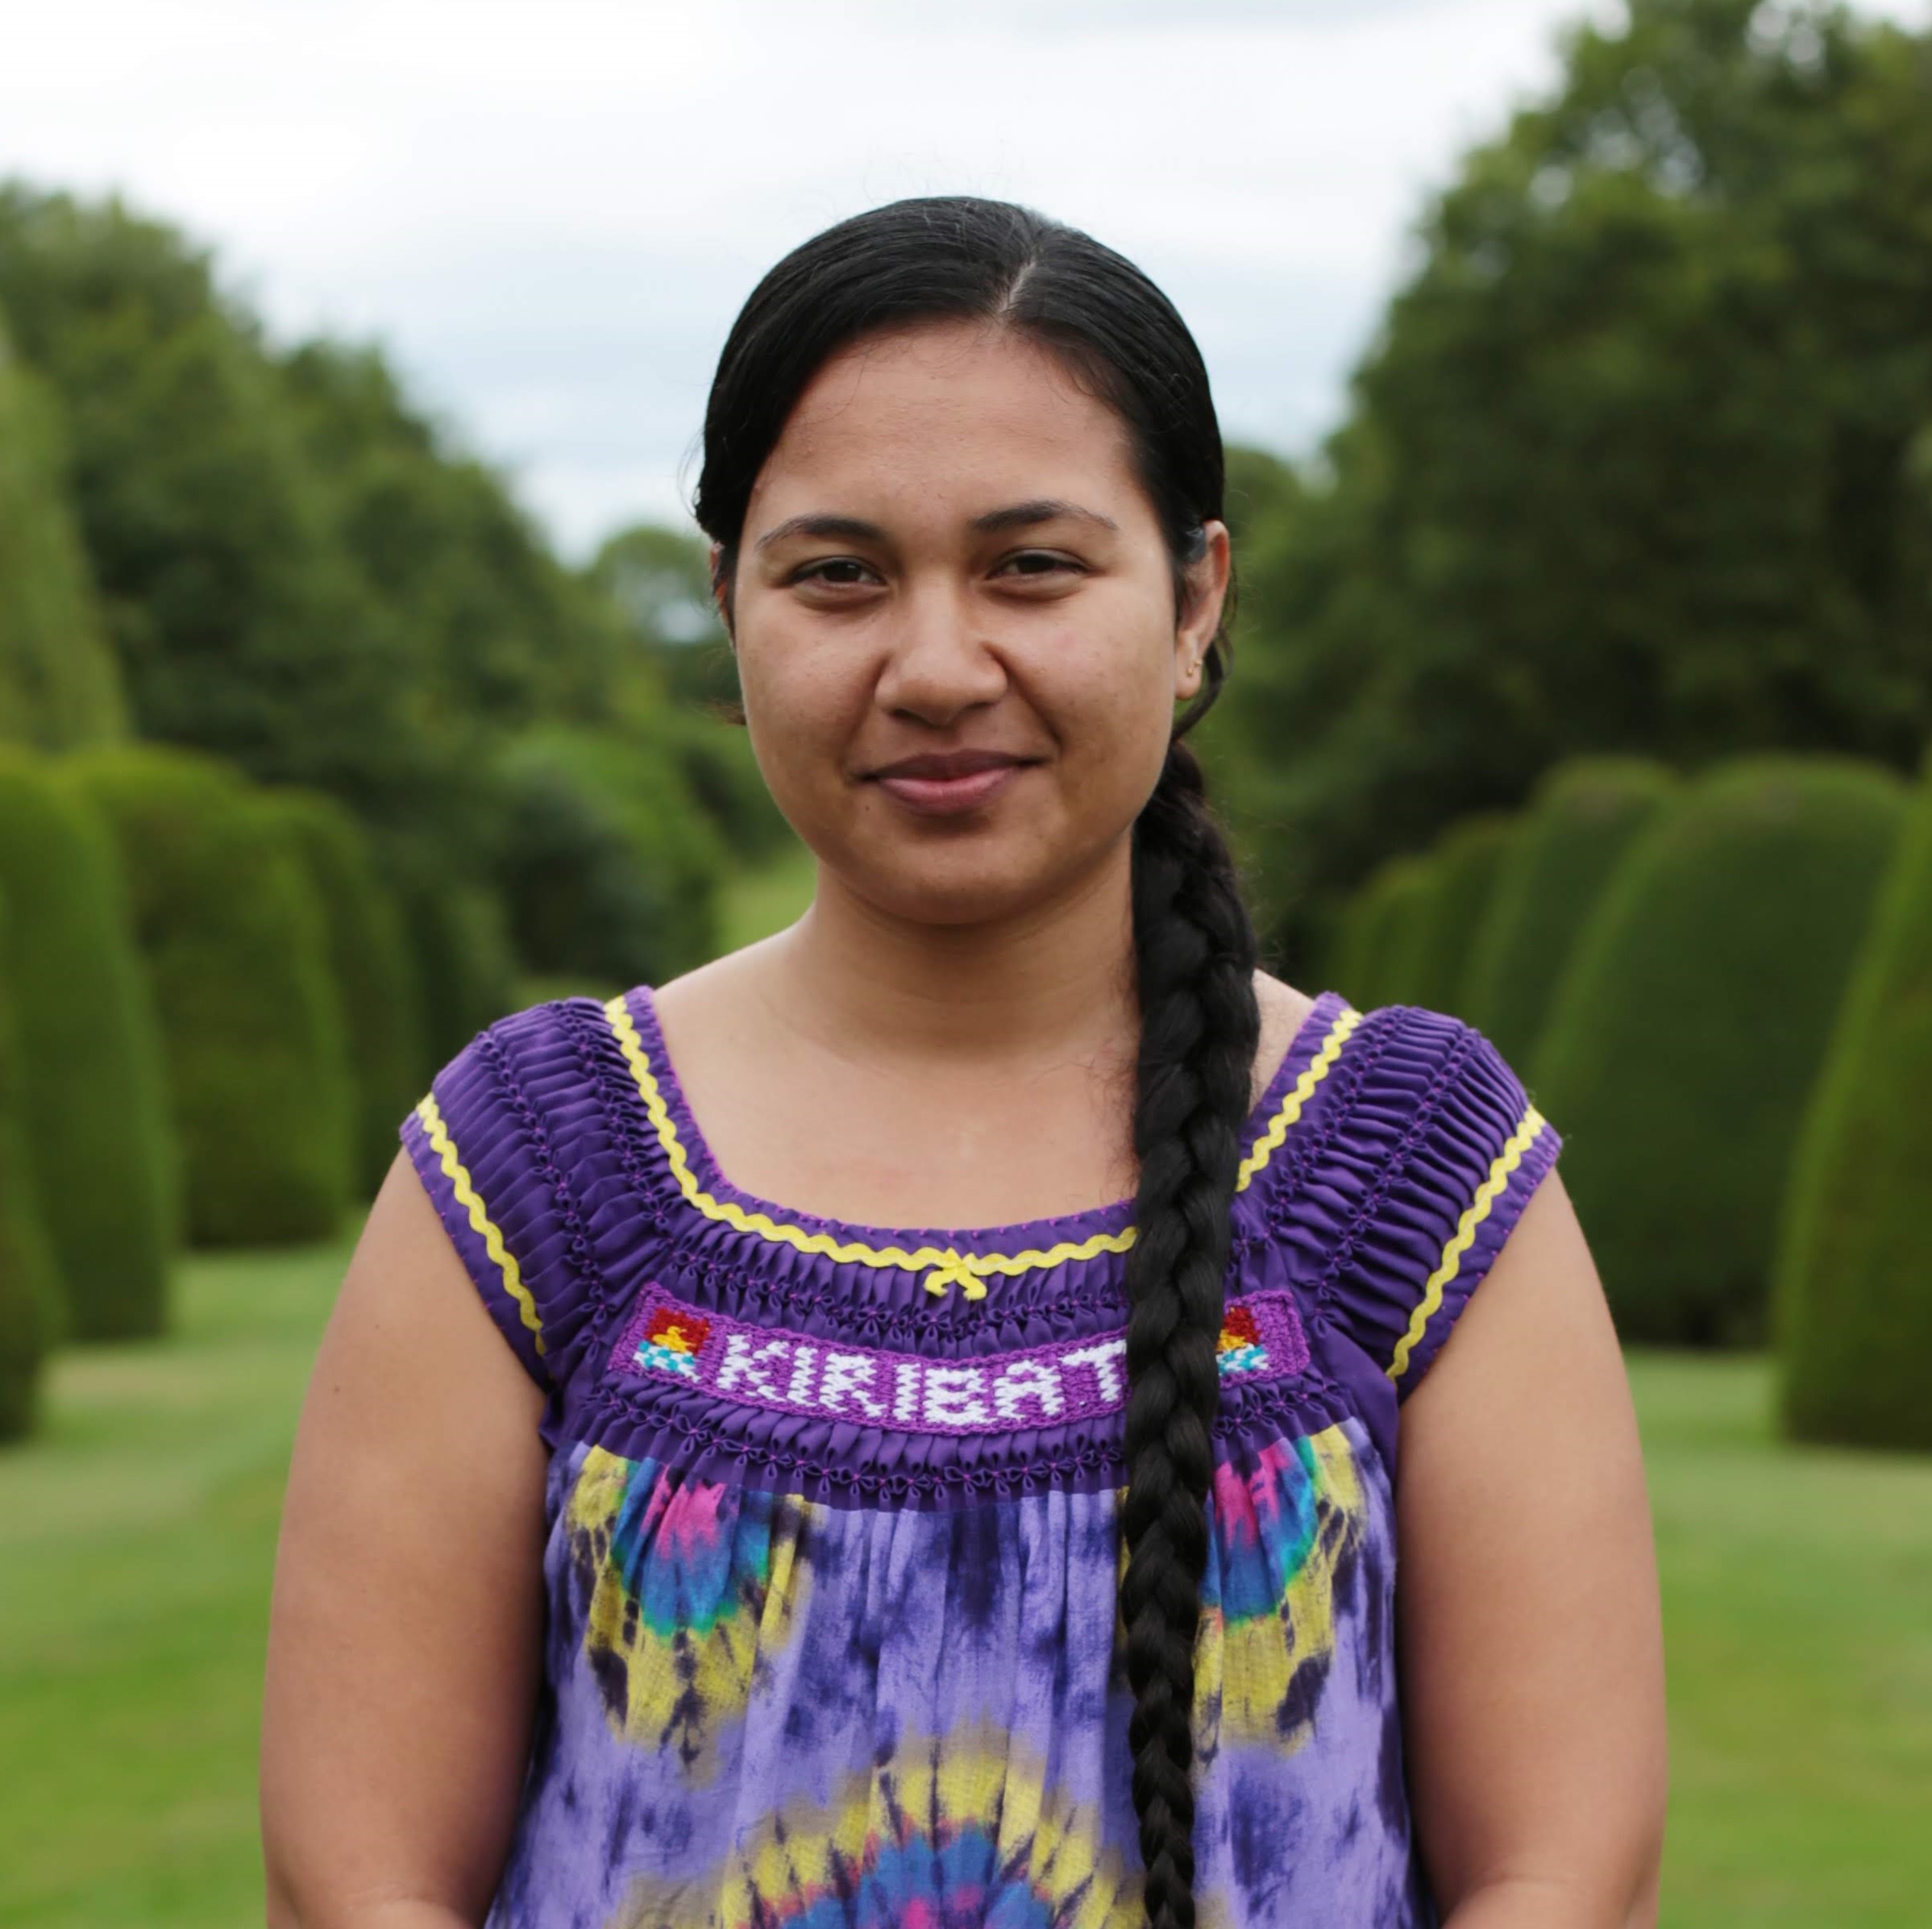 Lily Brechtefeld Kumkee 2018 Queen's Young Leader from Kiribati